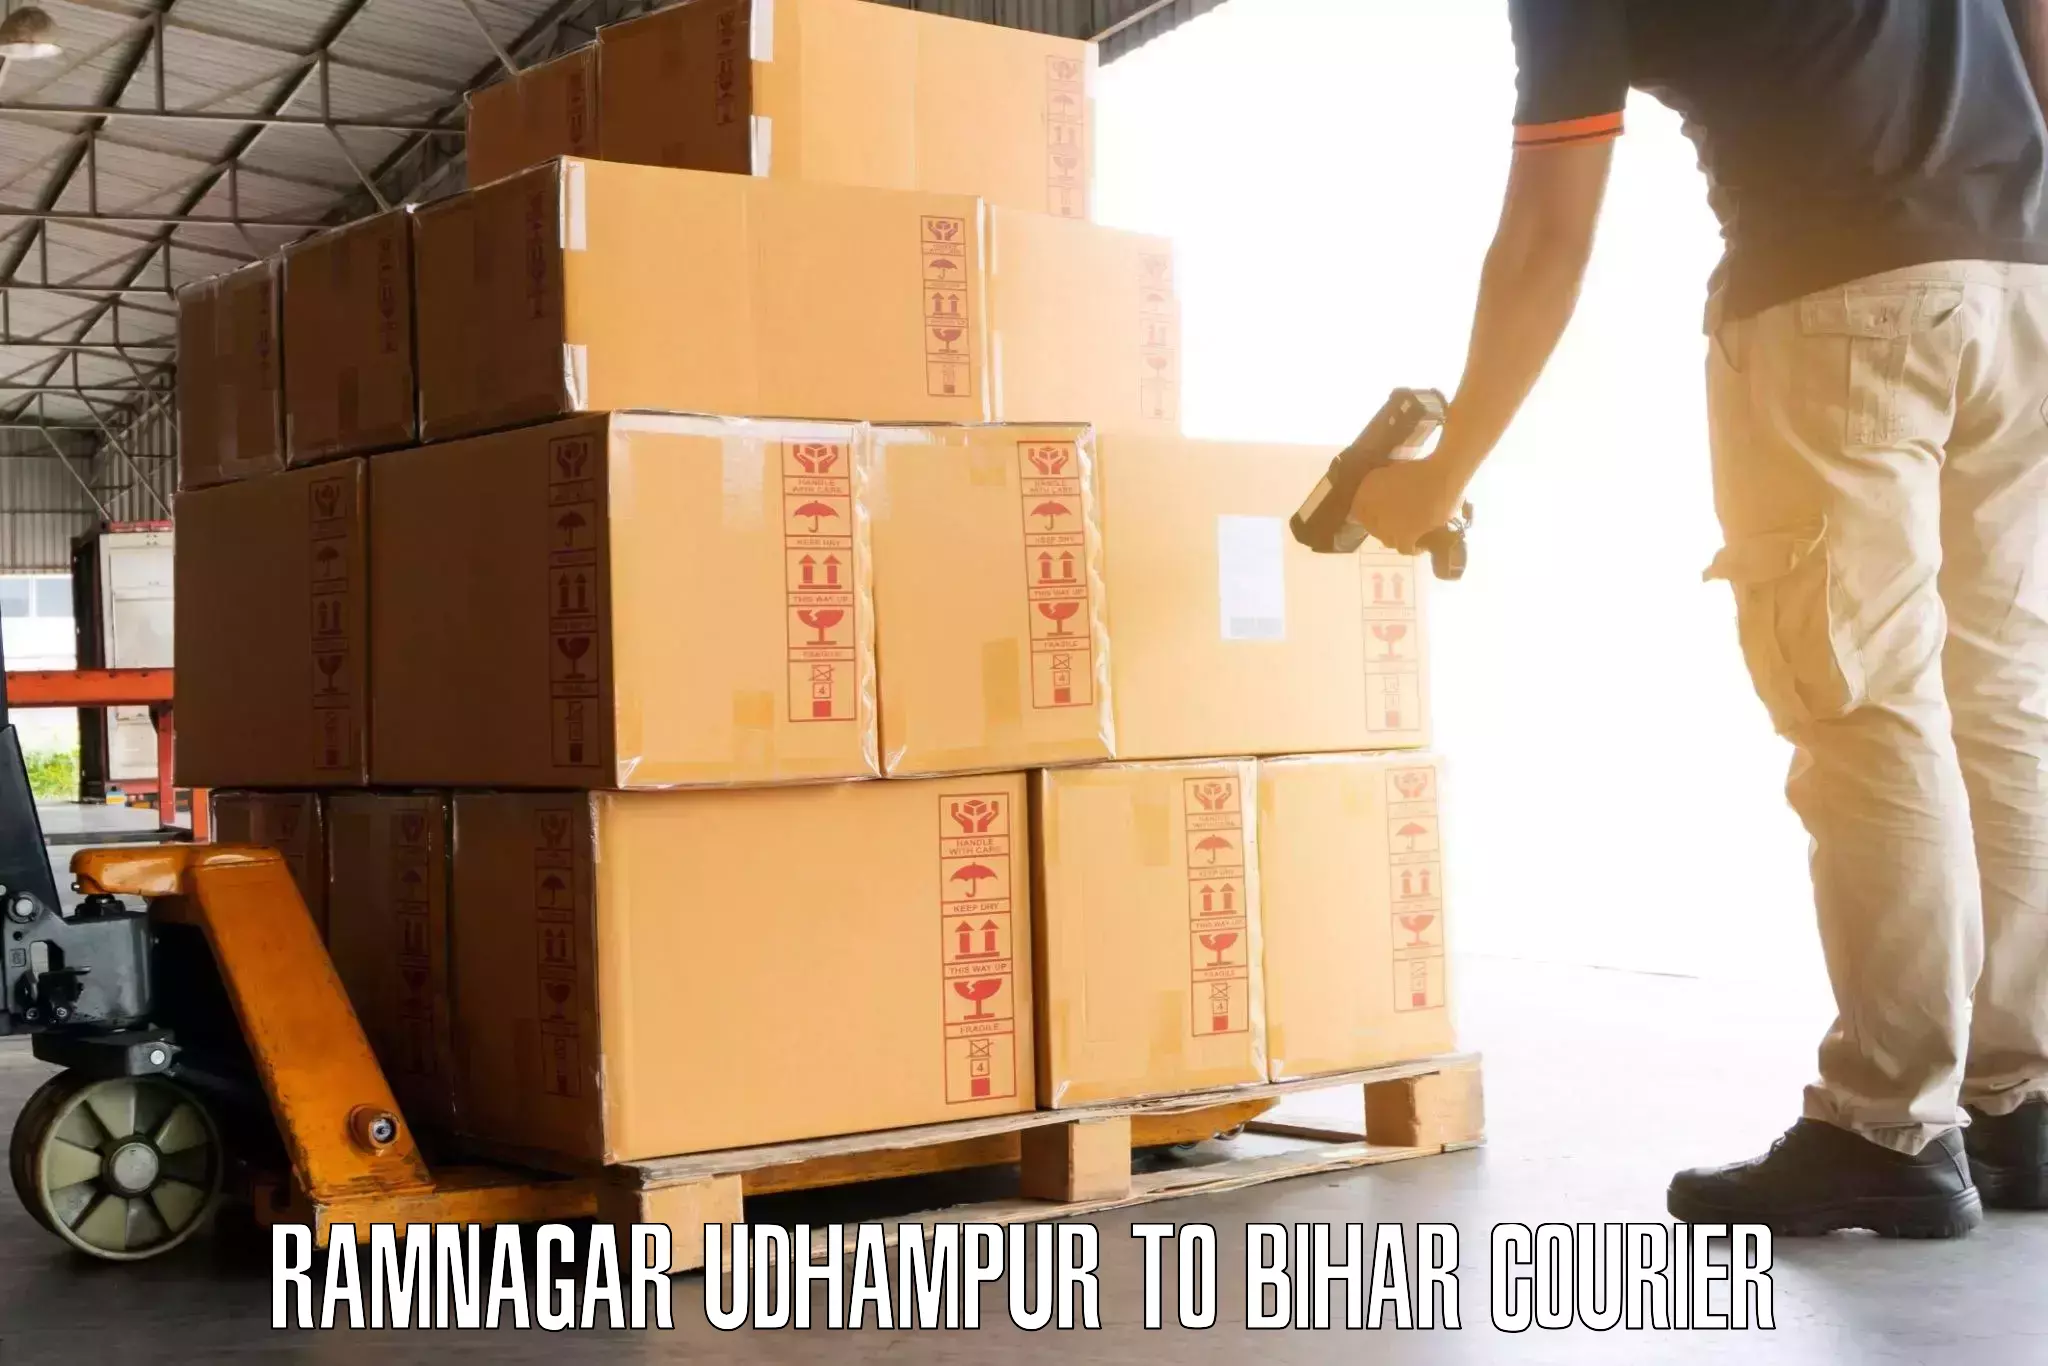 Versatile luggage courier in Ramnagar Udhampur to IIIT Bhagalpur